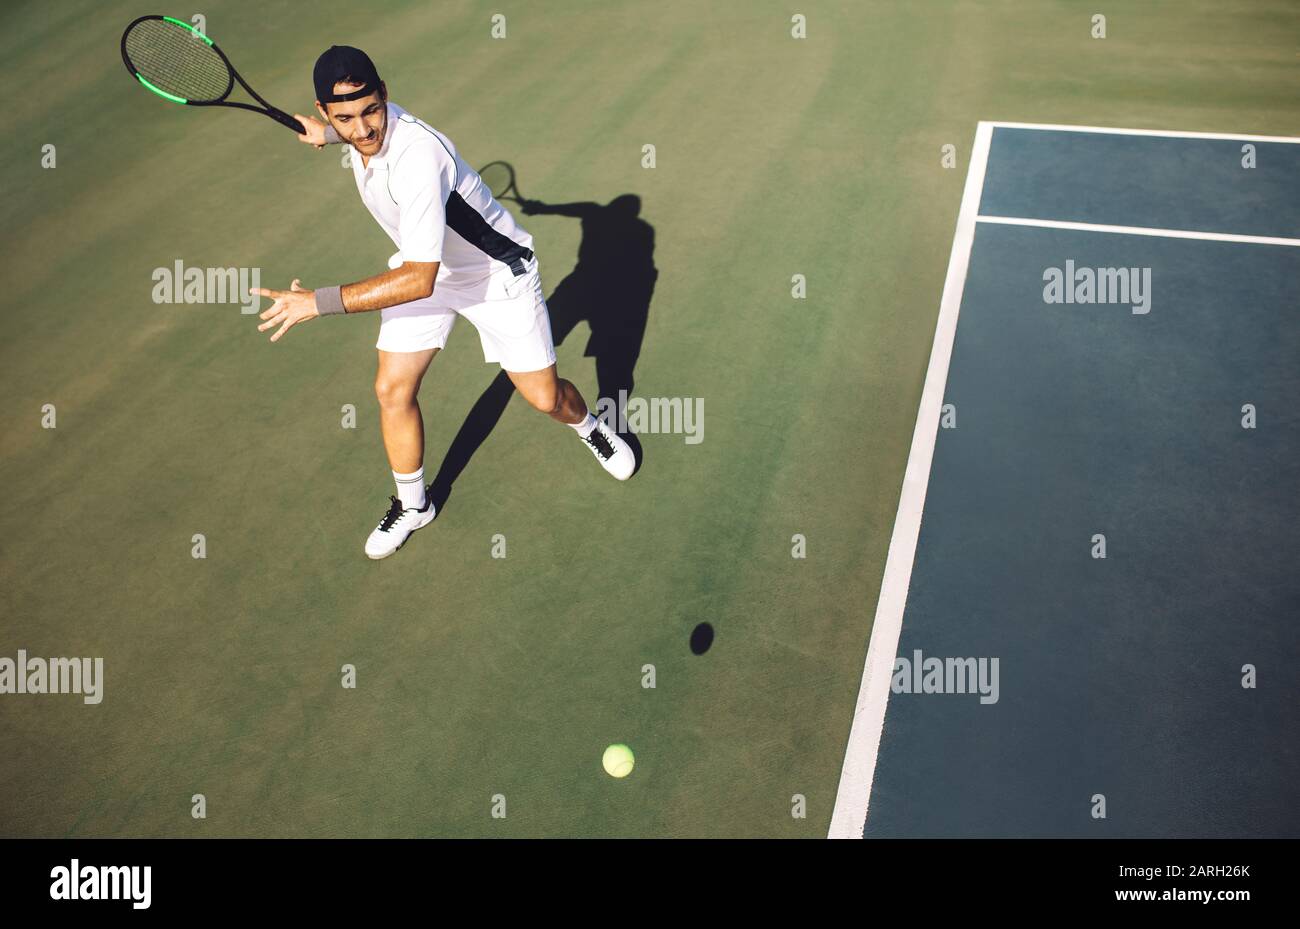 Un jeune joueur de tennis masculin concentré qui frappe le front depuis la ligne de base. Joueur de tennis jouant à un match sur le terrain dur. Banque D'Images